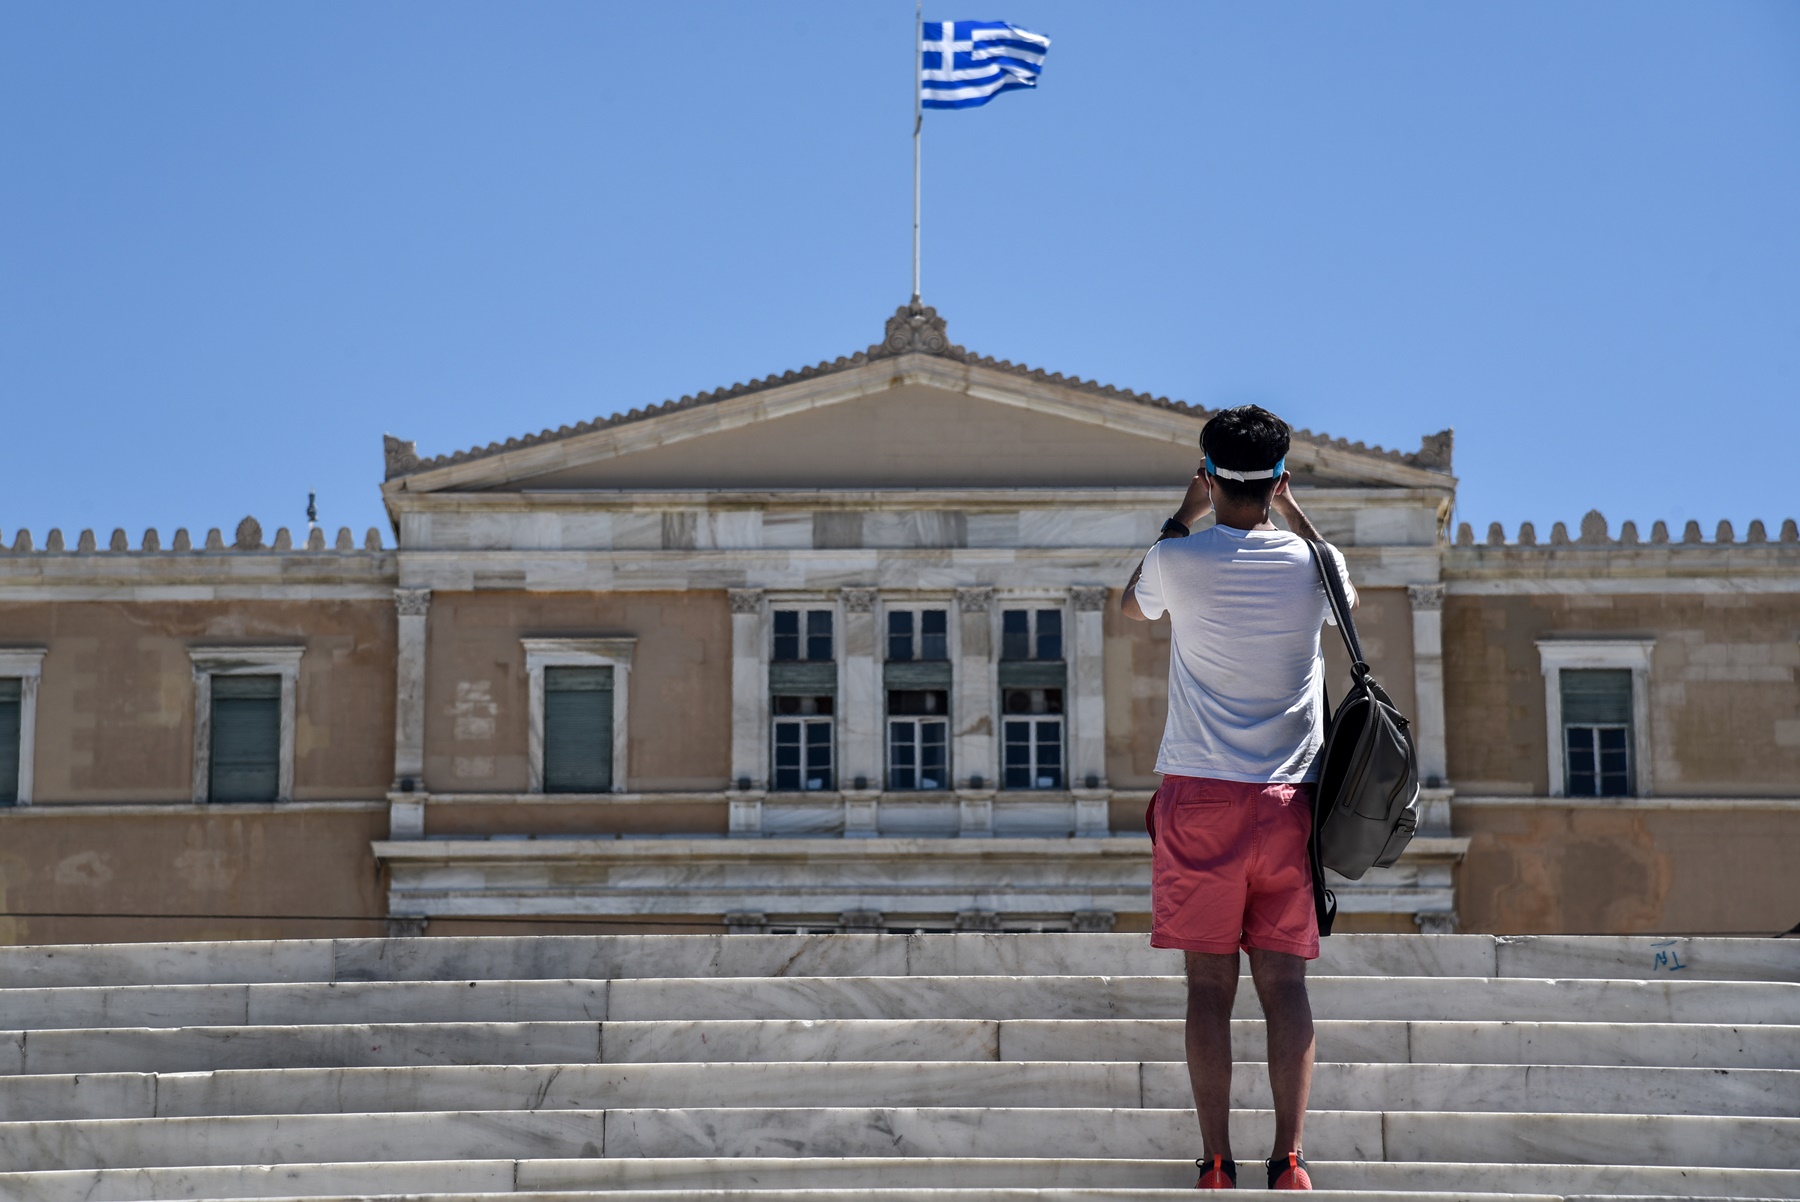 Ελληνικές ονομασίες στις μεταλλάξεις κορονοϊού: Σύγχυση με τη συχνή εναλλαγή